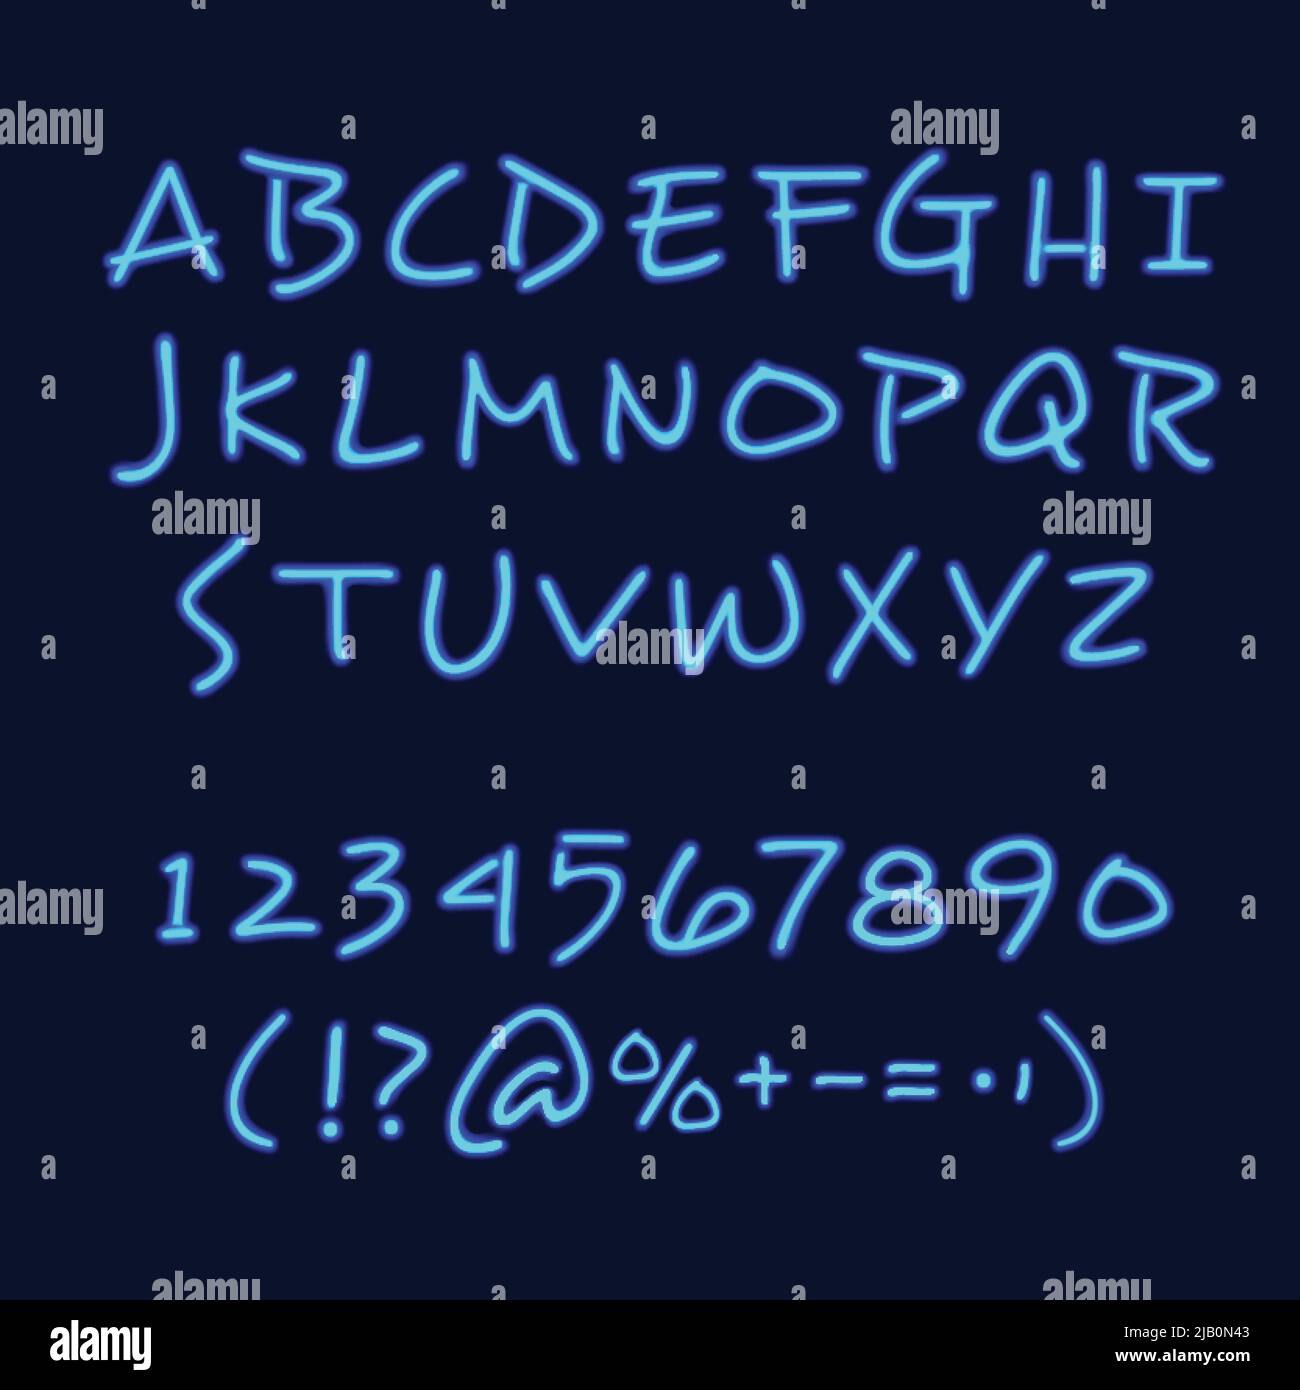 Exemple de style calligraphie et lettrage affiche de tableau noir avec chiffres et symboles de l'alphabet dessinés à la main au néon illustration vectorielle Illustration de Vecteur